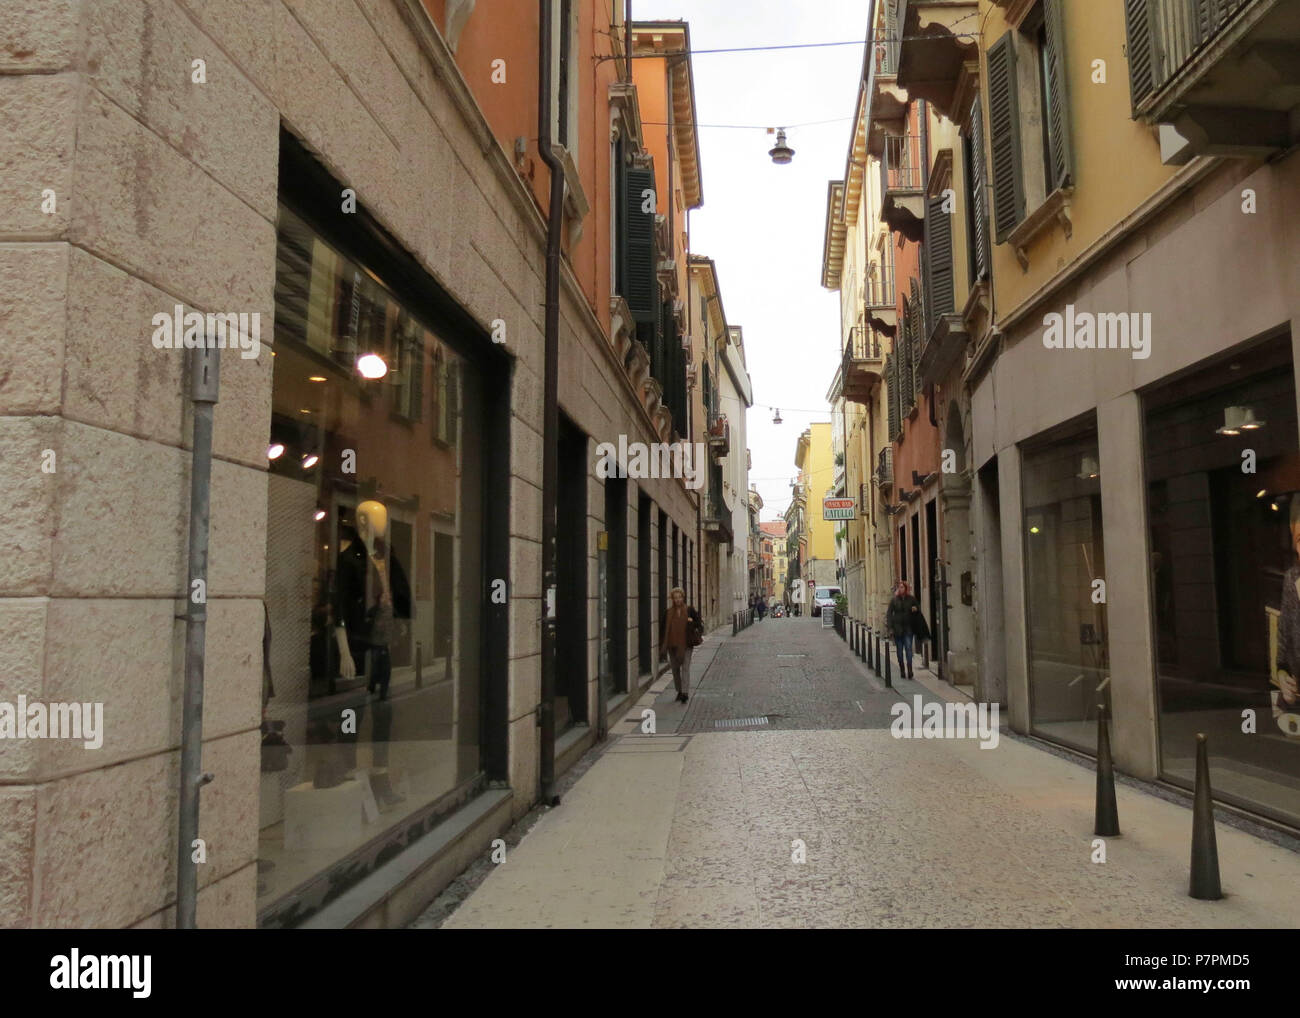 Via Valerio Catullo. The city of Verona. Italy. Stock Photo